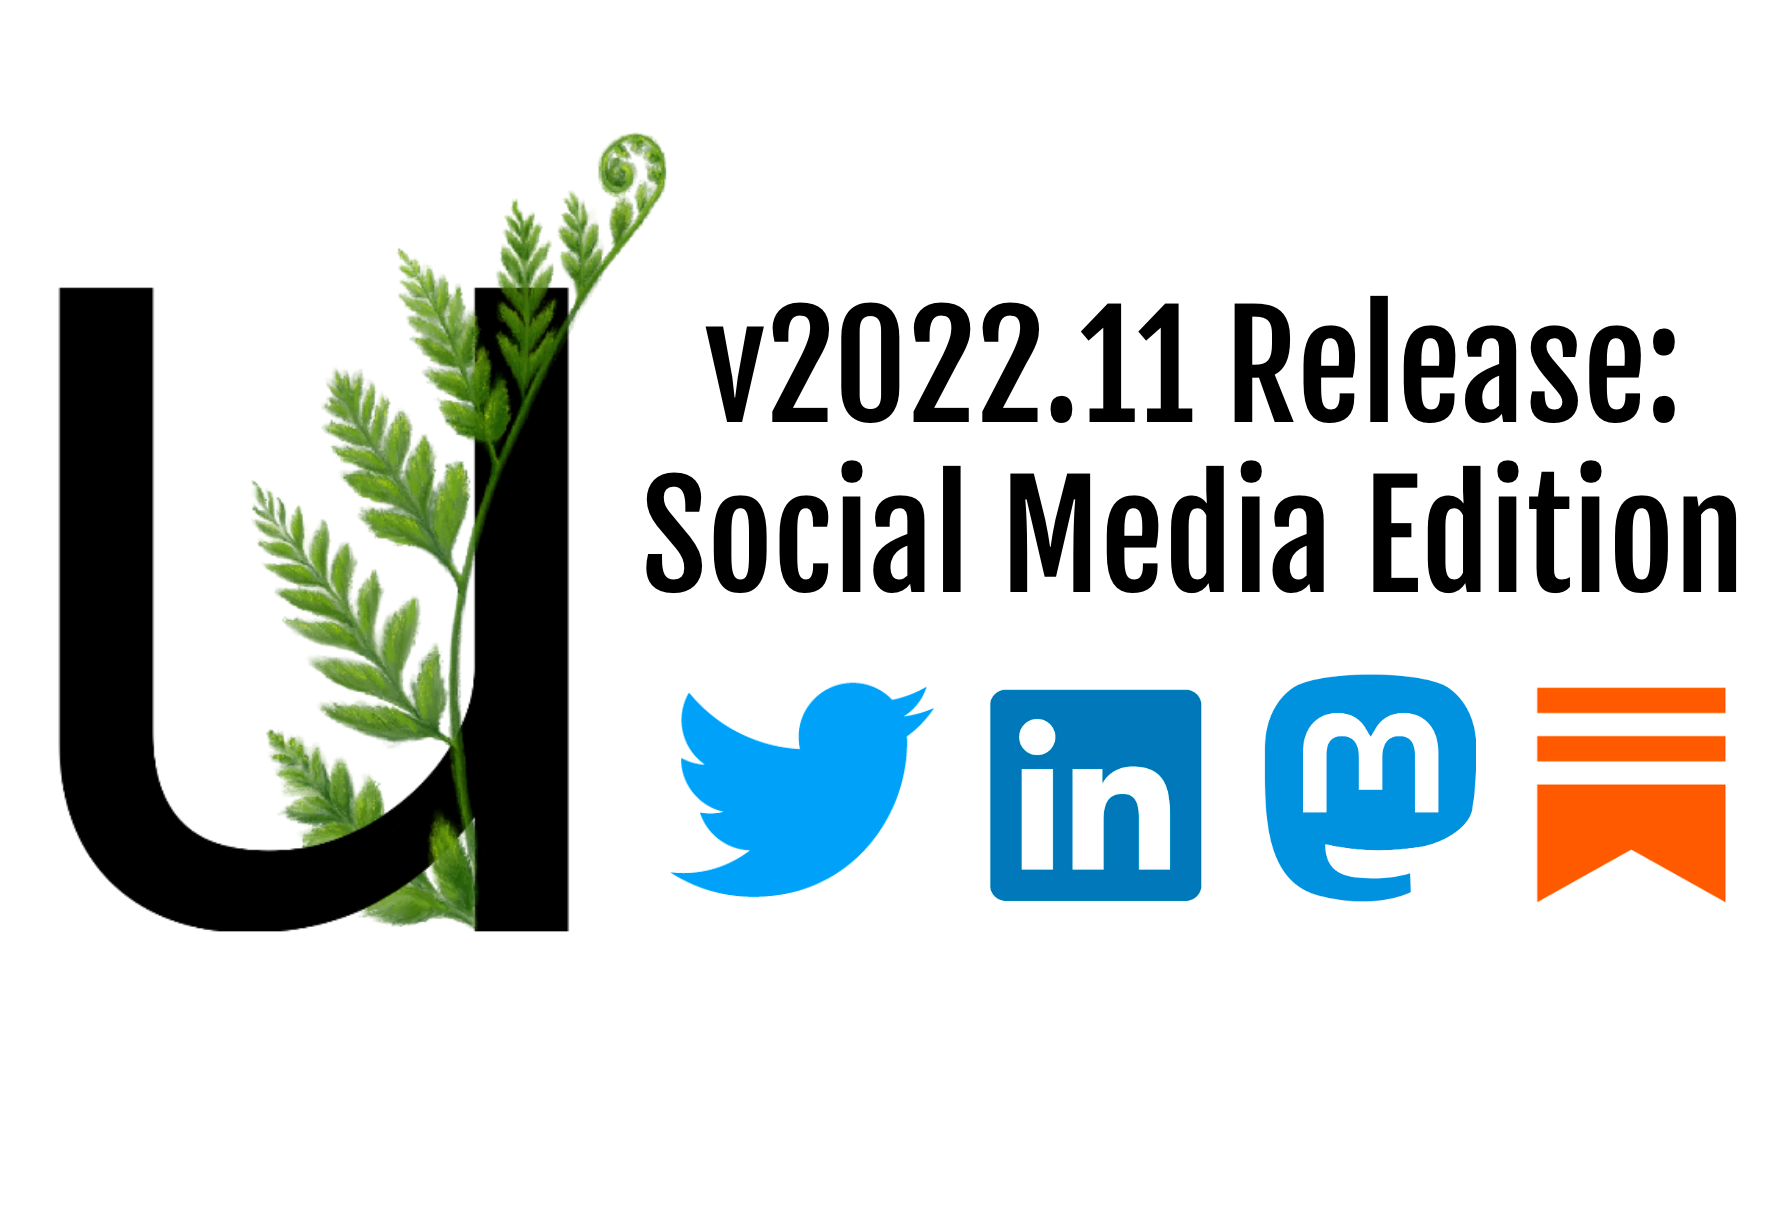 Unfurl v2022.11: Social Media Edition